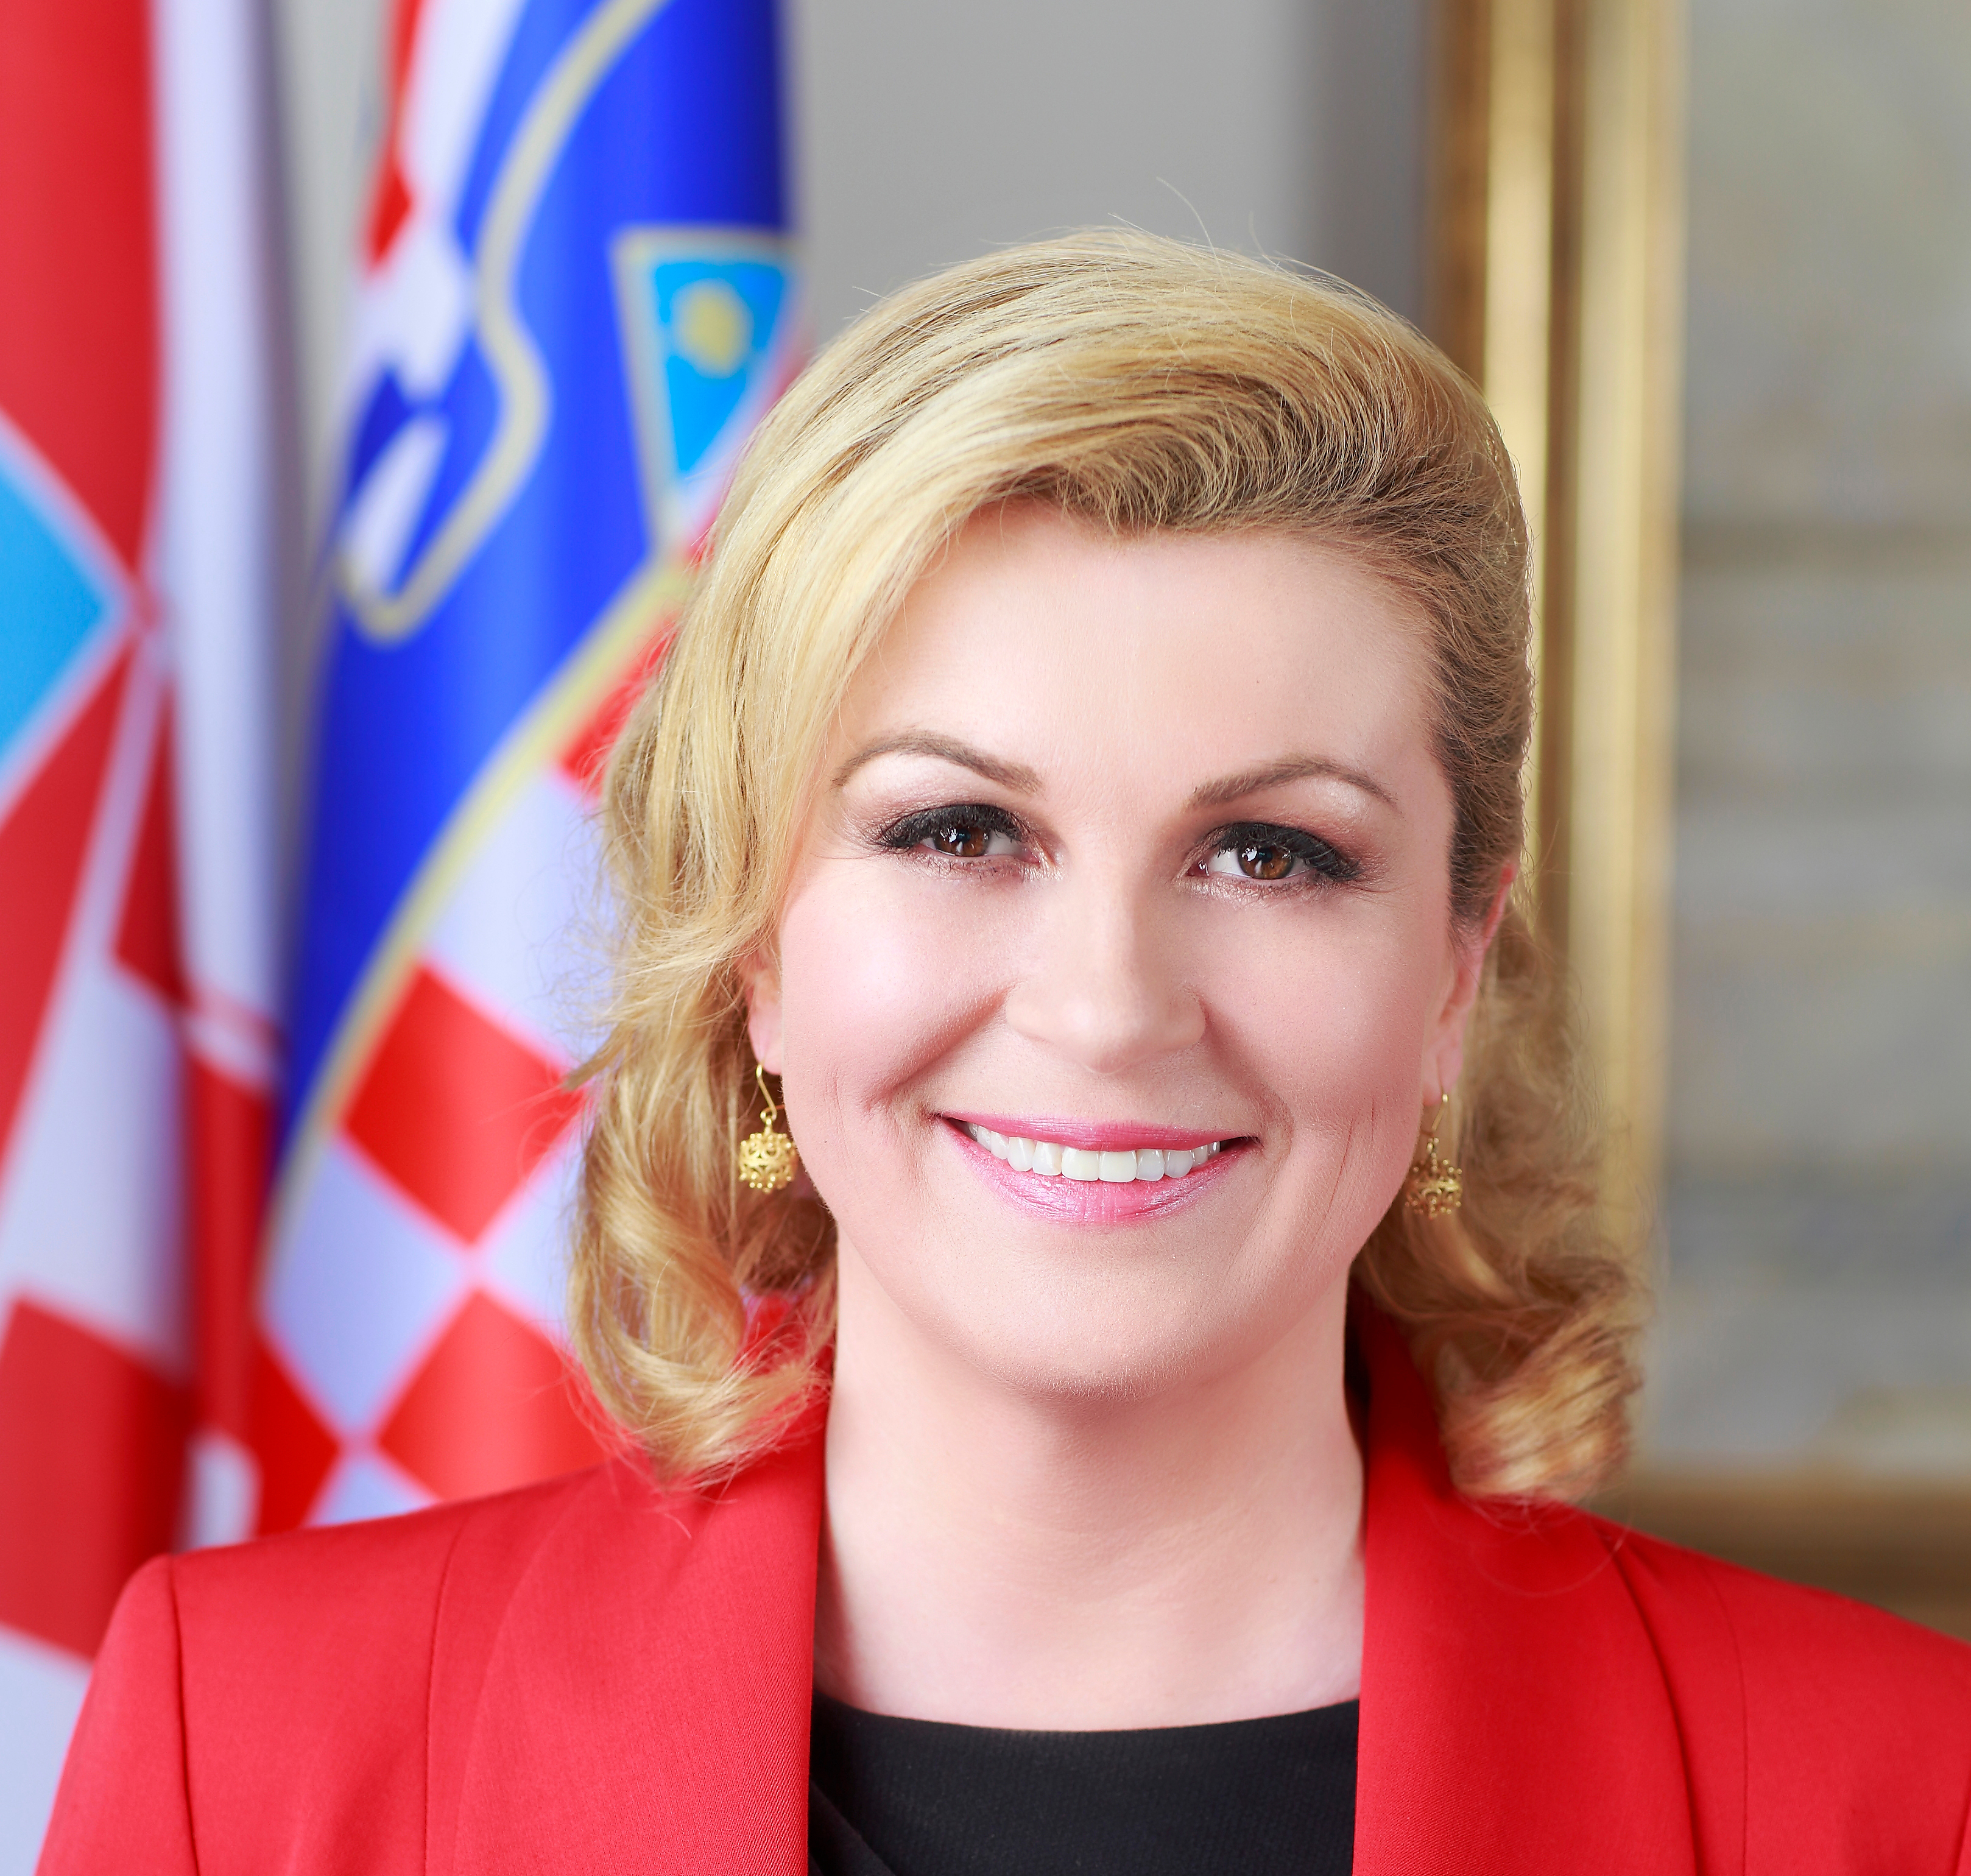 президент хорватии сейчас